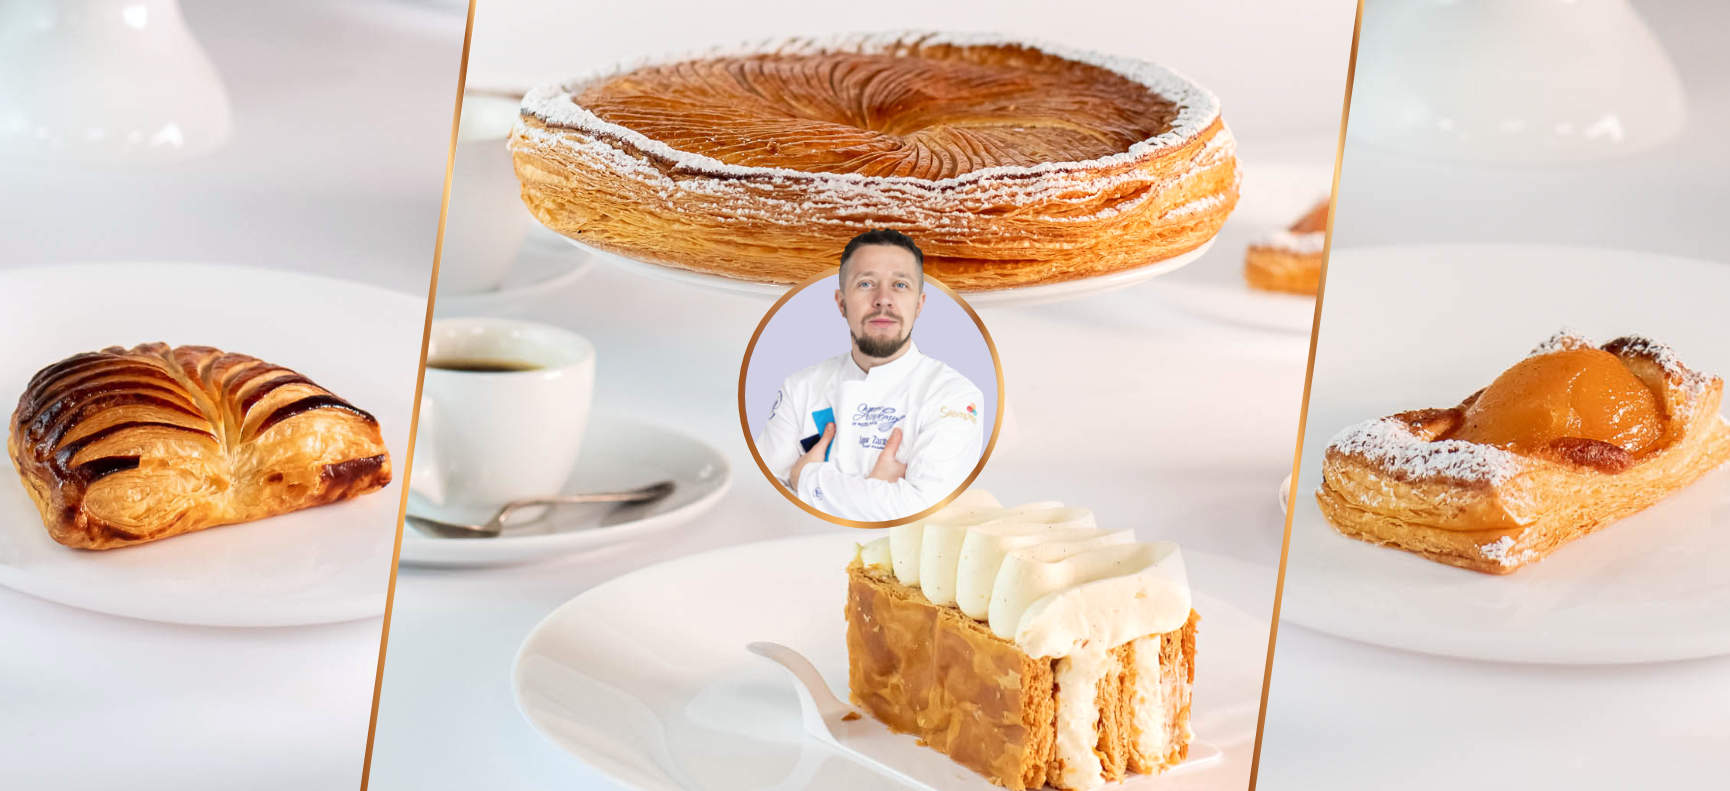 Galette Des Rois oraz inne odsłony ciasta francuskiego - Szkolenie Cukiernicze z Igorem Zaritskim